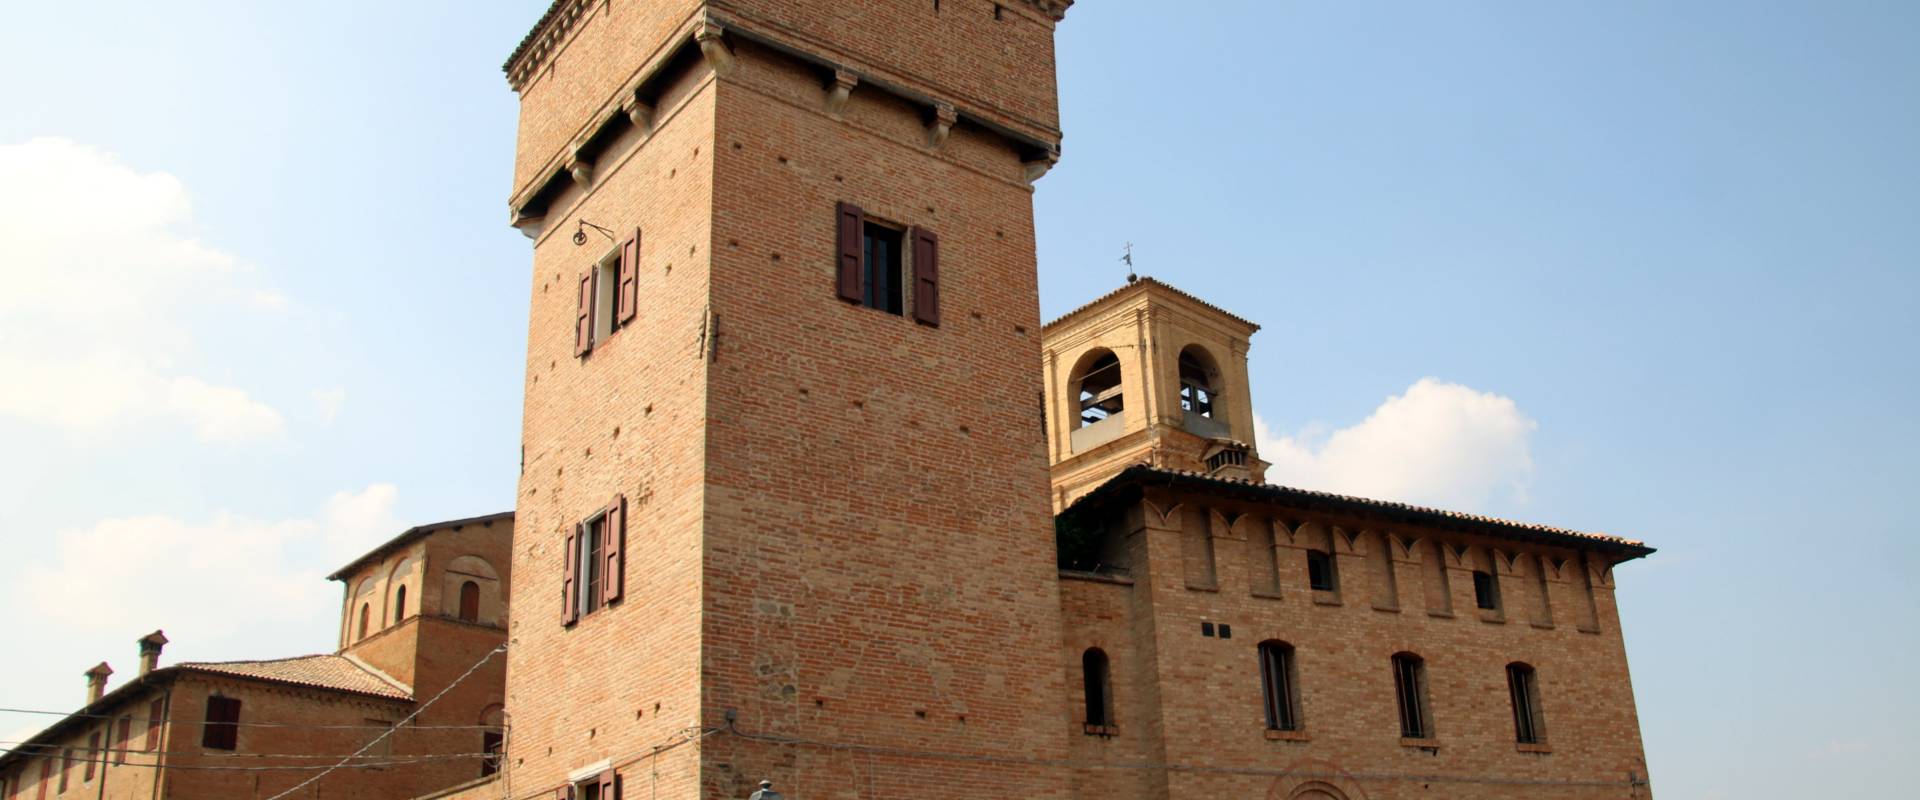 Torre delle Prigioni (Castelvetro di Modena) 09 foto di Mongolo1984